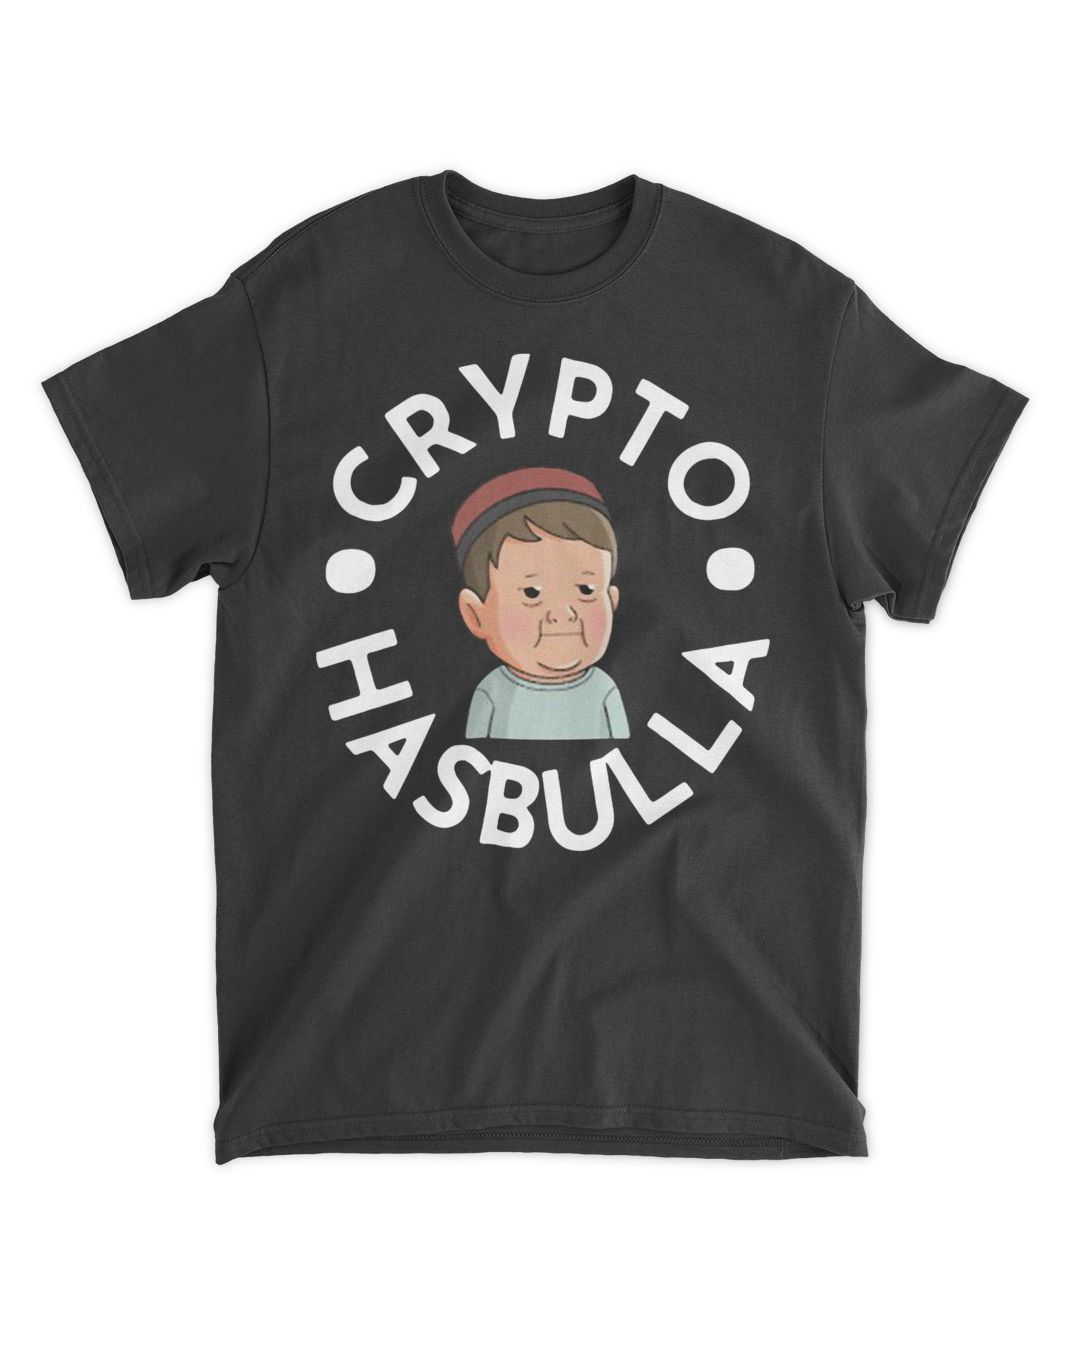 crypto hasbulla shirt